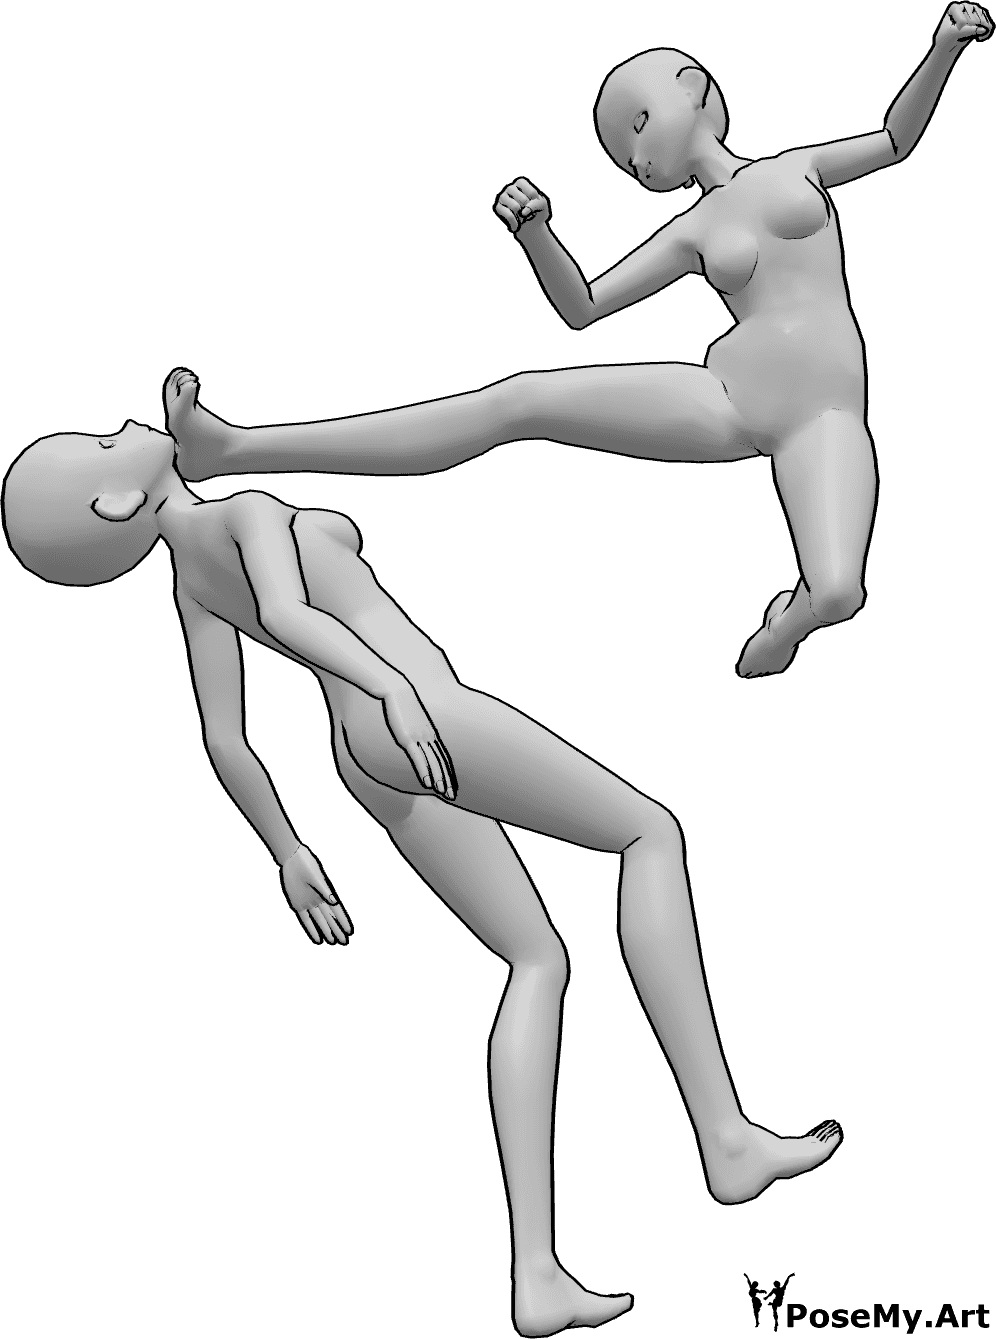 Riferimento alle pose- Anime femmina che calcia in posa - Le femmine di Anime stanno lottando, una di loro salta su e dà un calcio in testa all'altra femmina